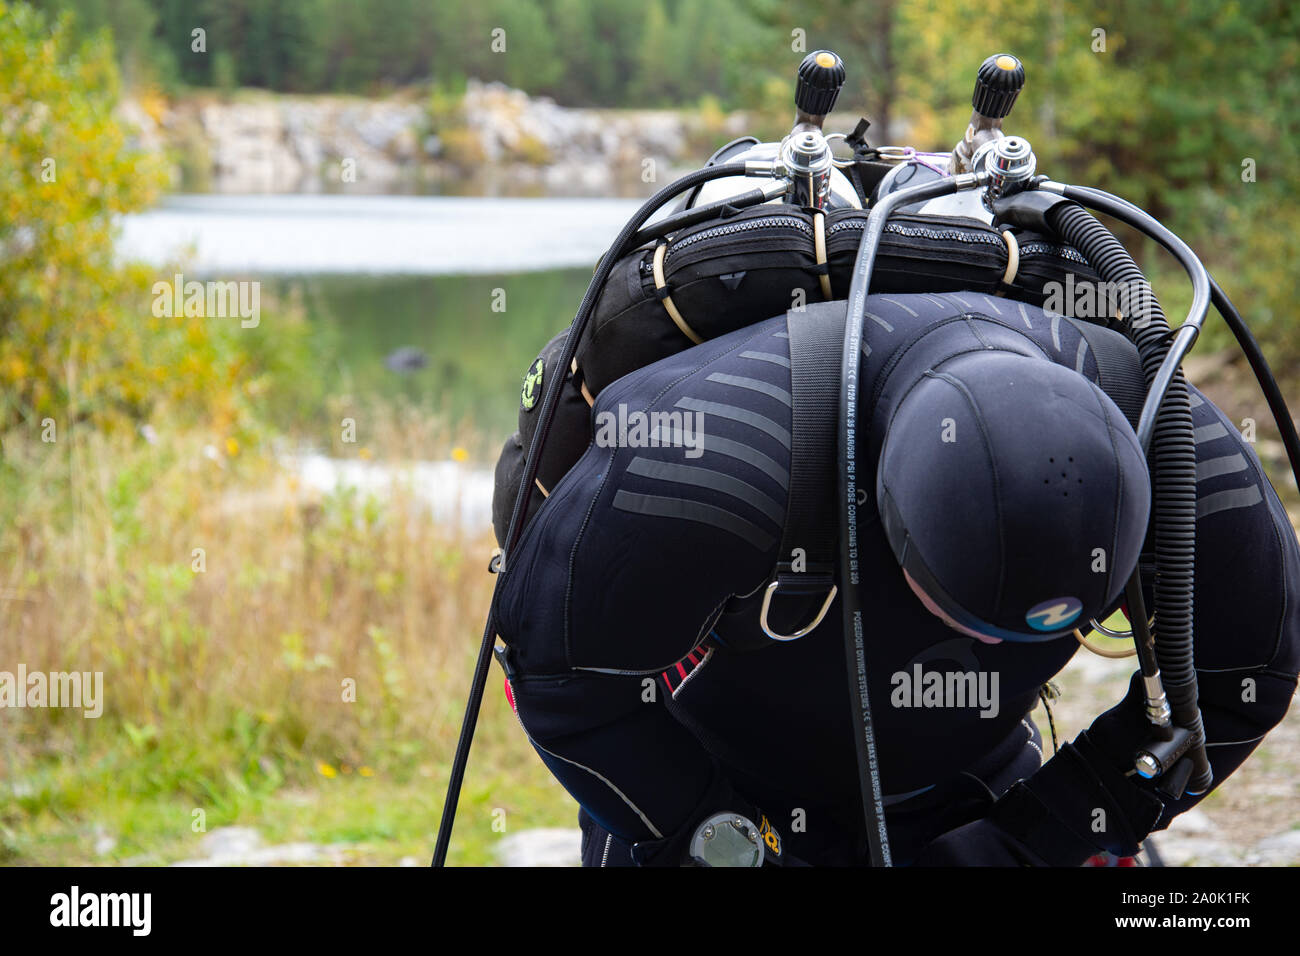 Paayanne See, Finnland - September 2019. Diver prüft Geräte in der Nähe des Sees. Männliche Taucher im Neoprenanzug überprüfen Ausrüstungen vor dem Eintauchen. Stockfoto